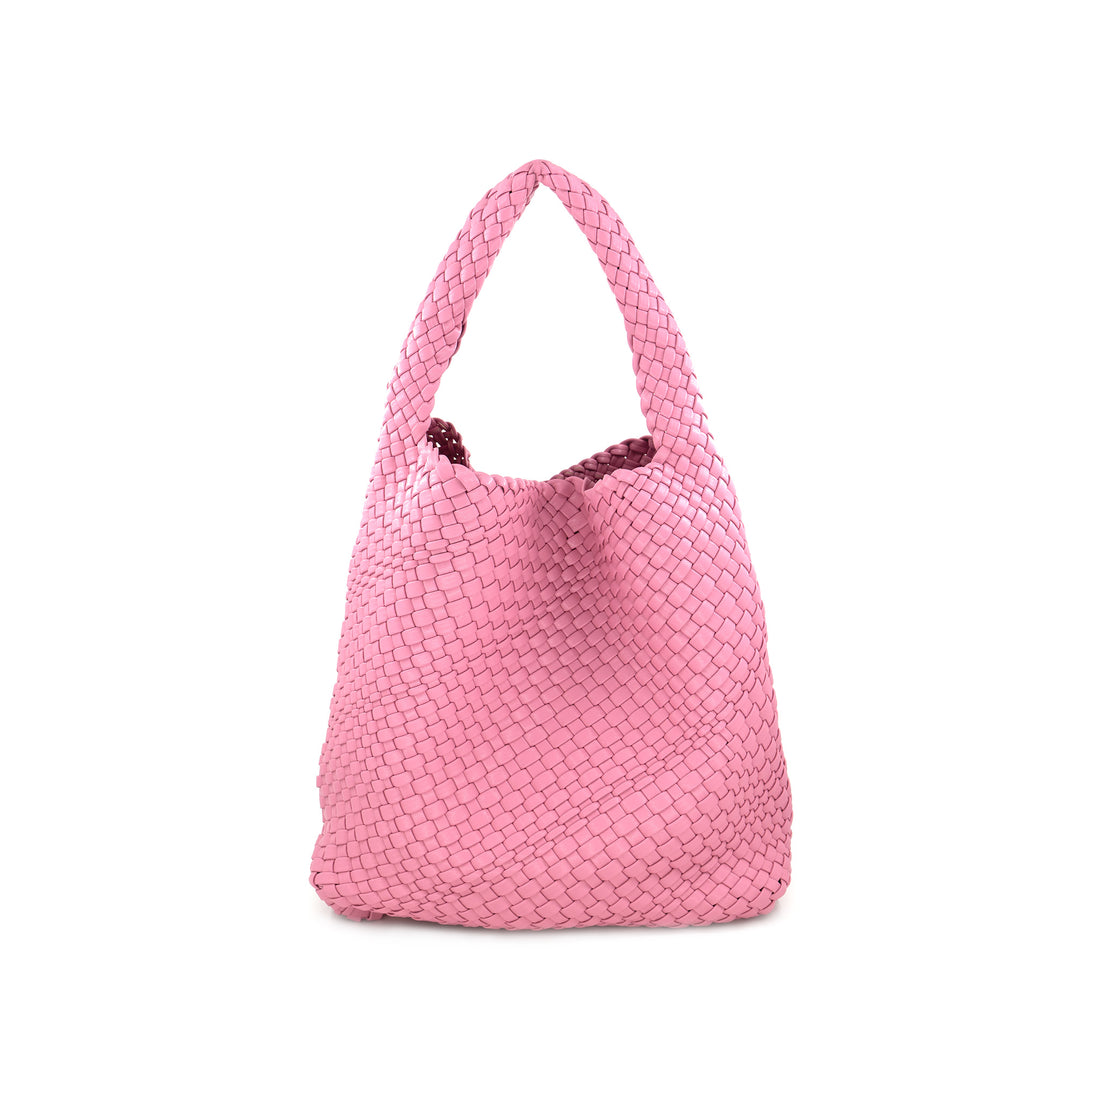 Woven Medium Pink Handbag